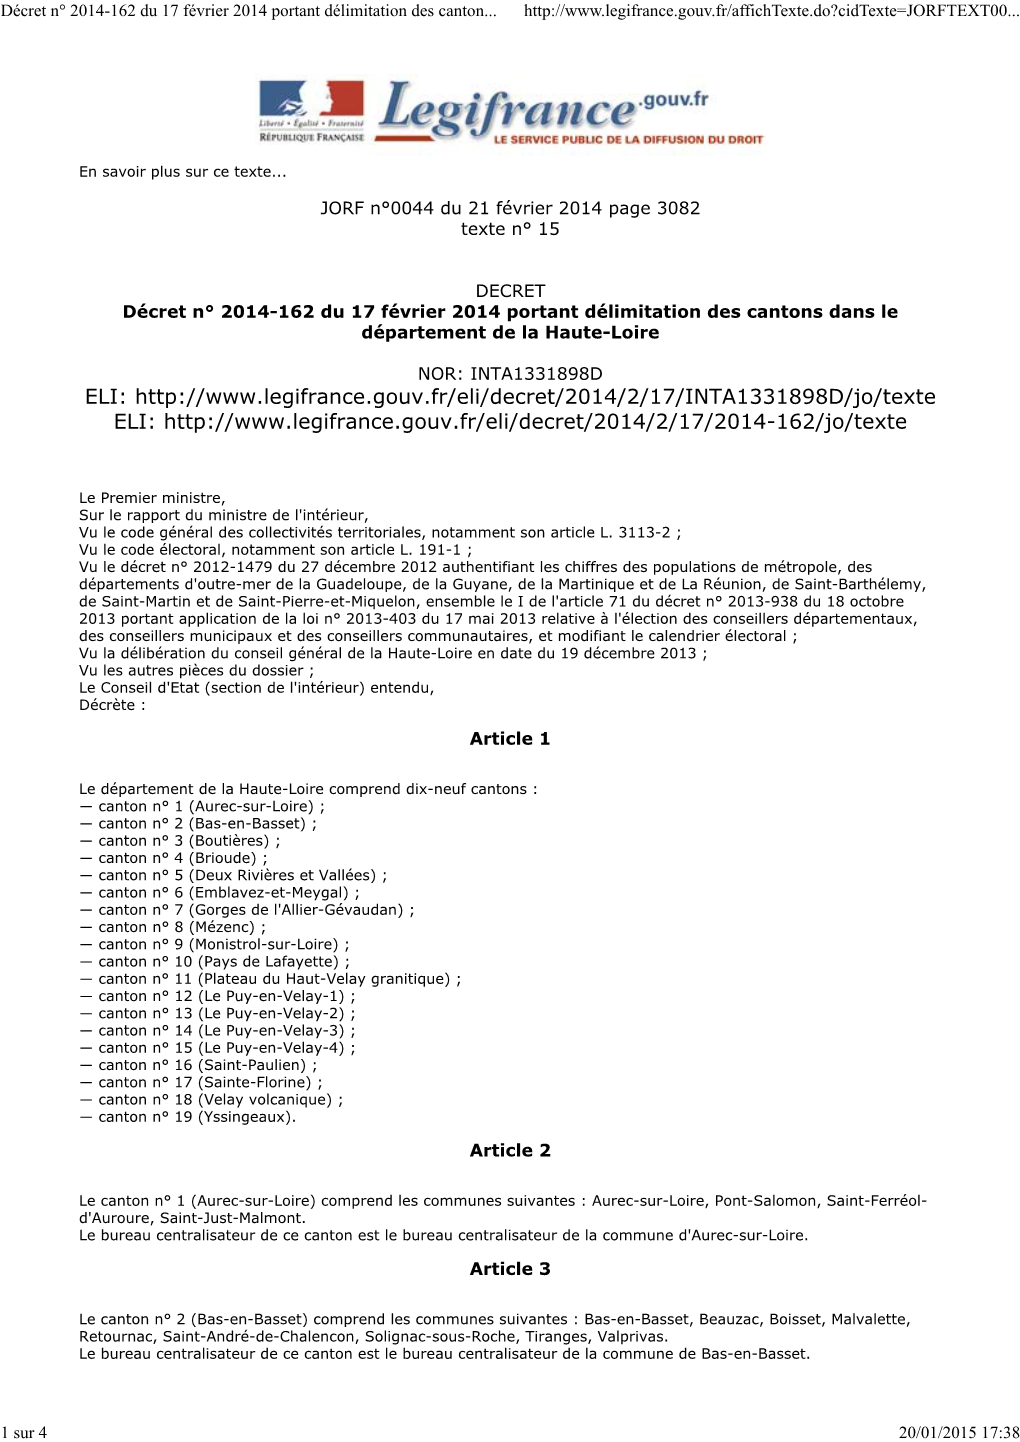 Décret N° 2014-162 Du 17 Février 2014 Portant Délimitation Des Cantons Dans Le Département De La Haute-Loire | Legifrance